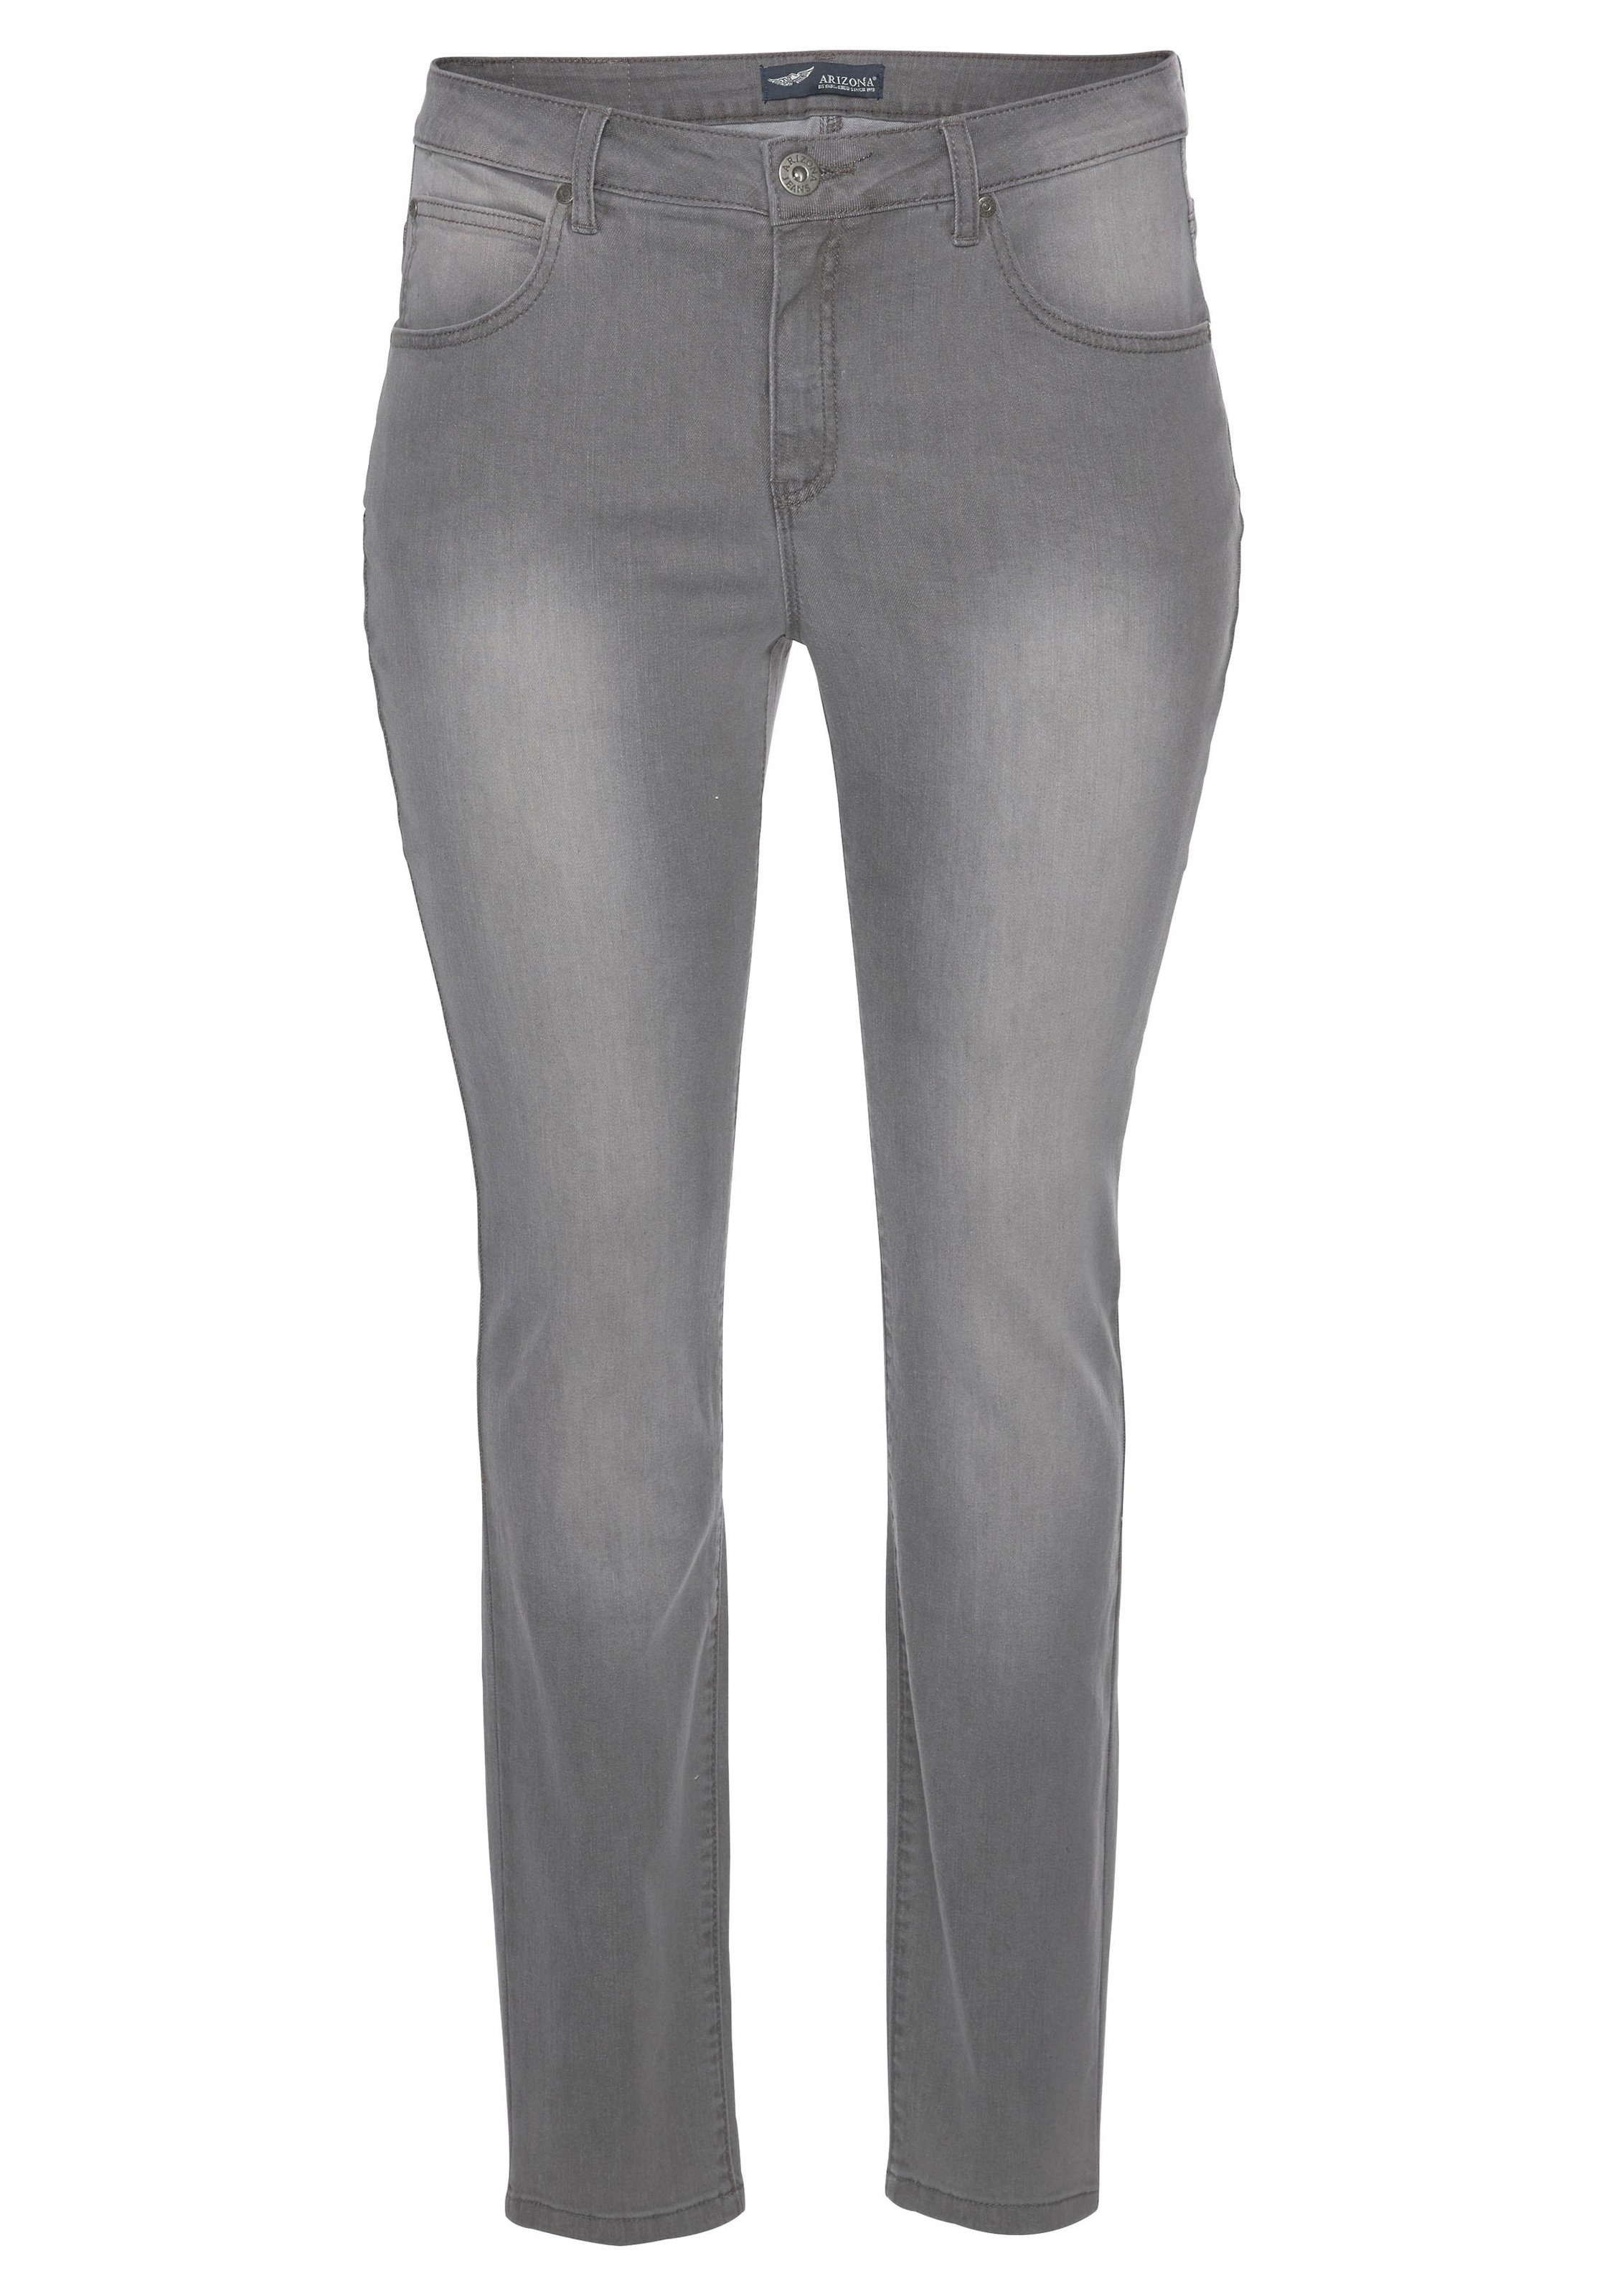 Shop Arizona im High Online Slim-fit-Jeans OTTO »Curve-Collection«, Waist bestellen